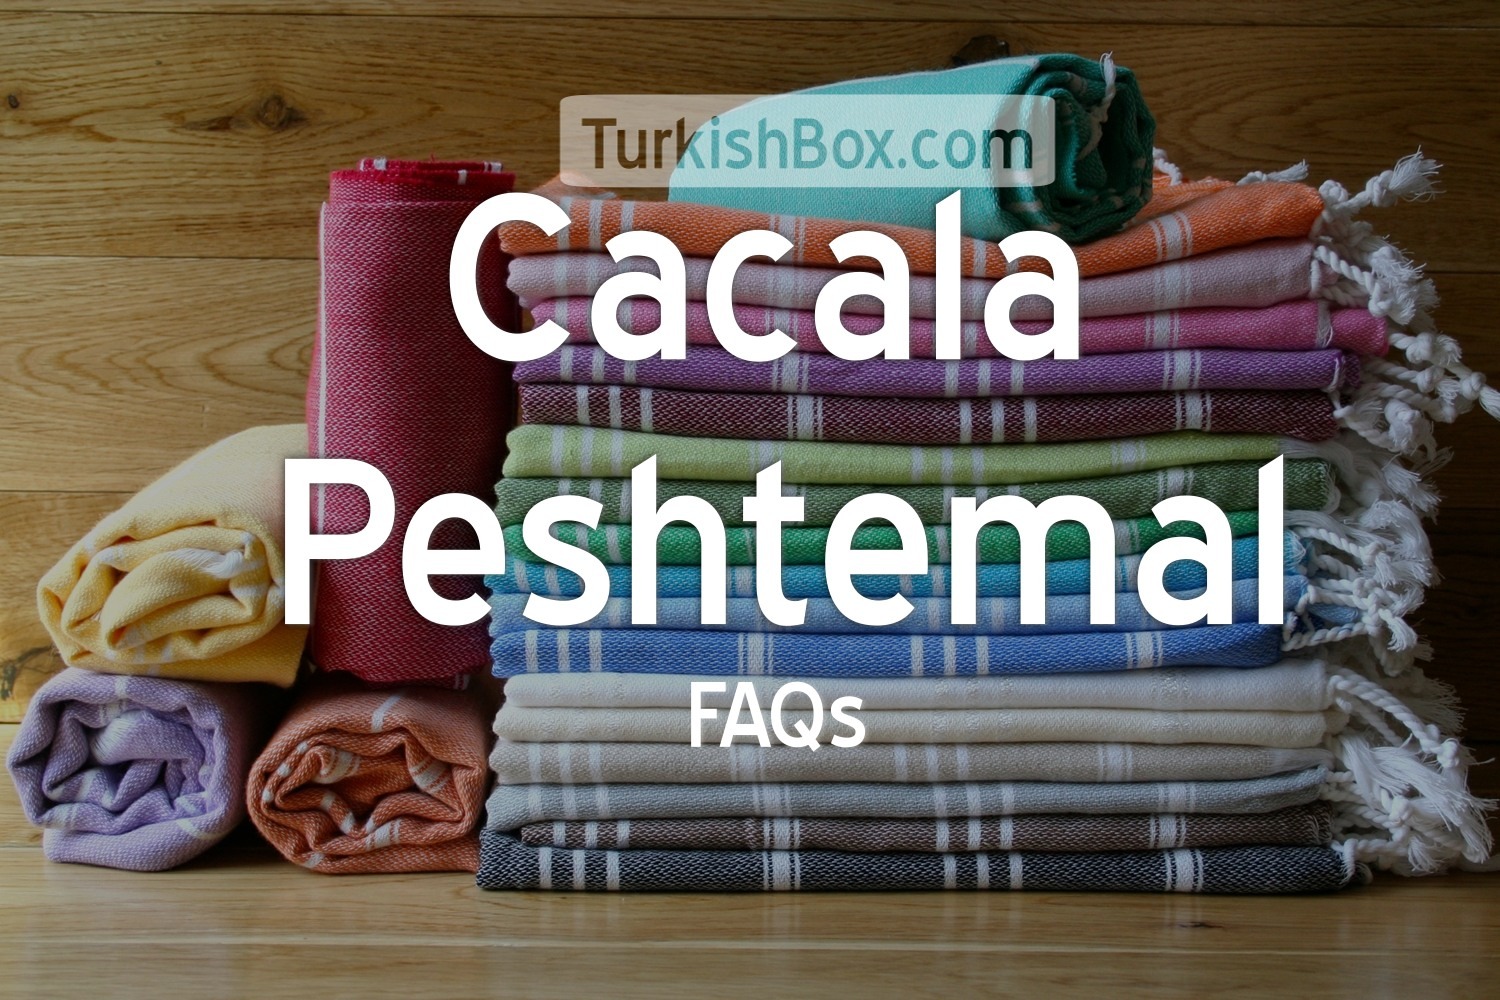 Cacala Peshtemal Turkish Towel Reviews FAQs